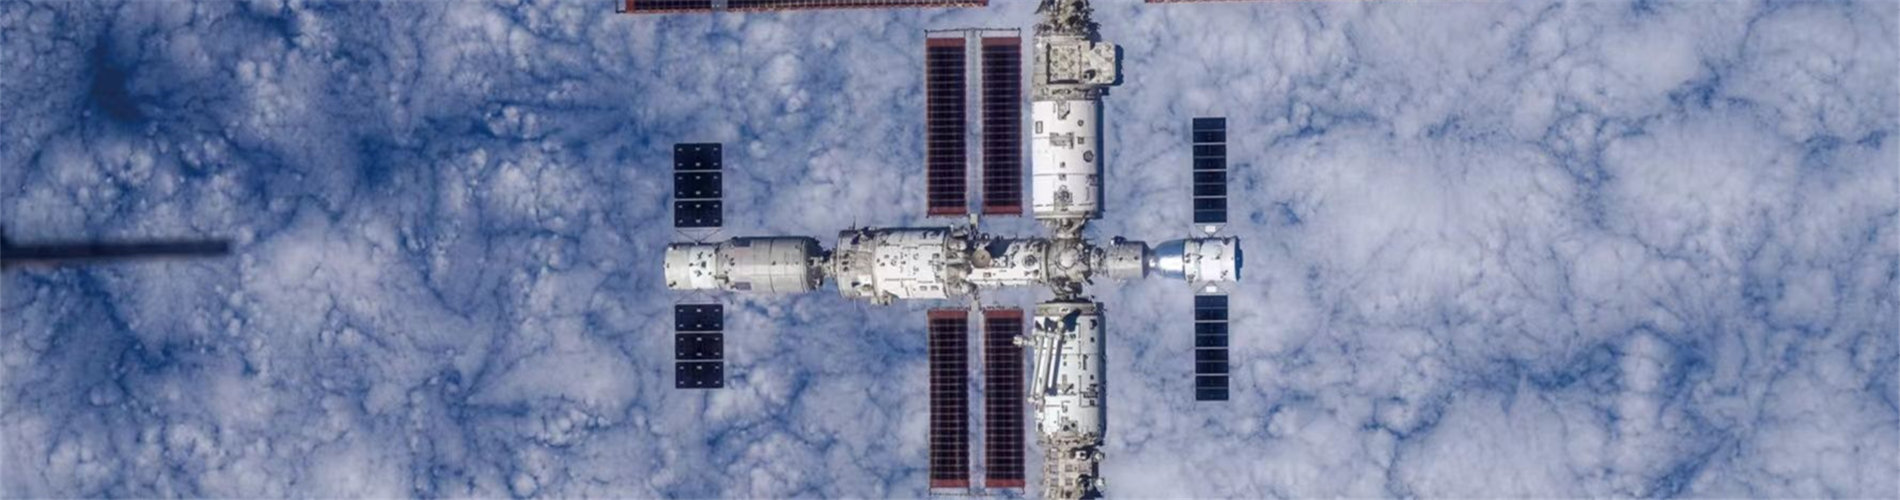 中國空間站全貌高清圖像首次公布